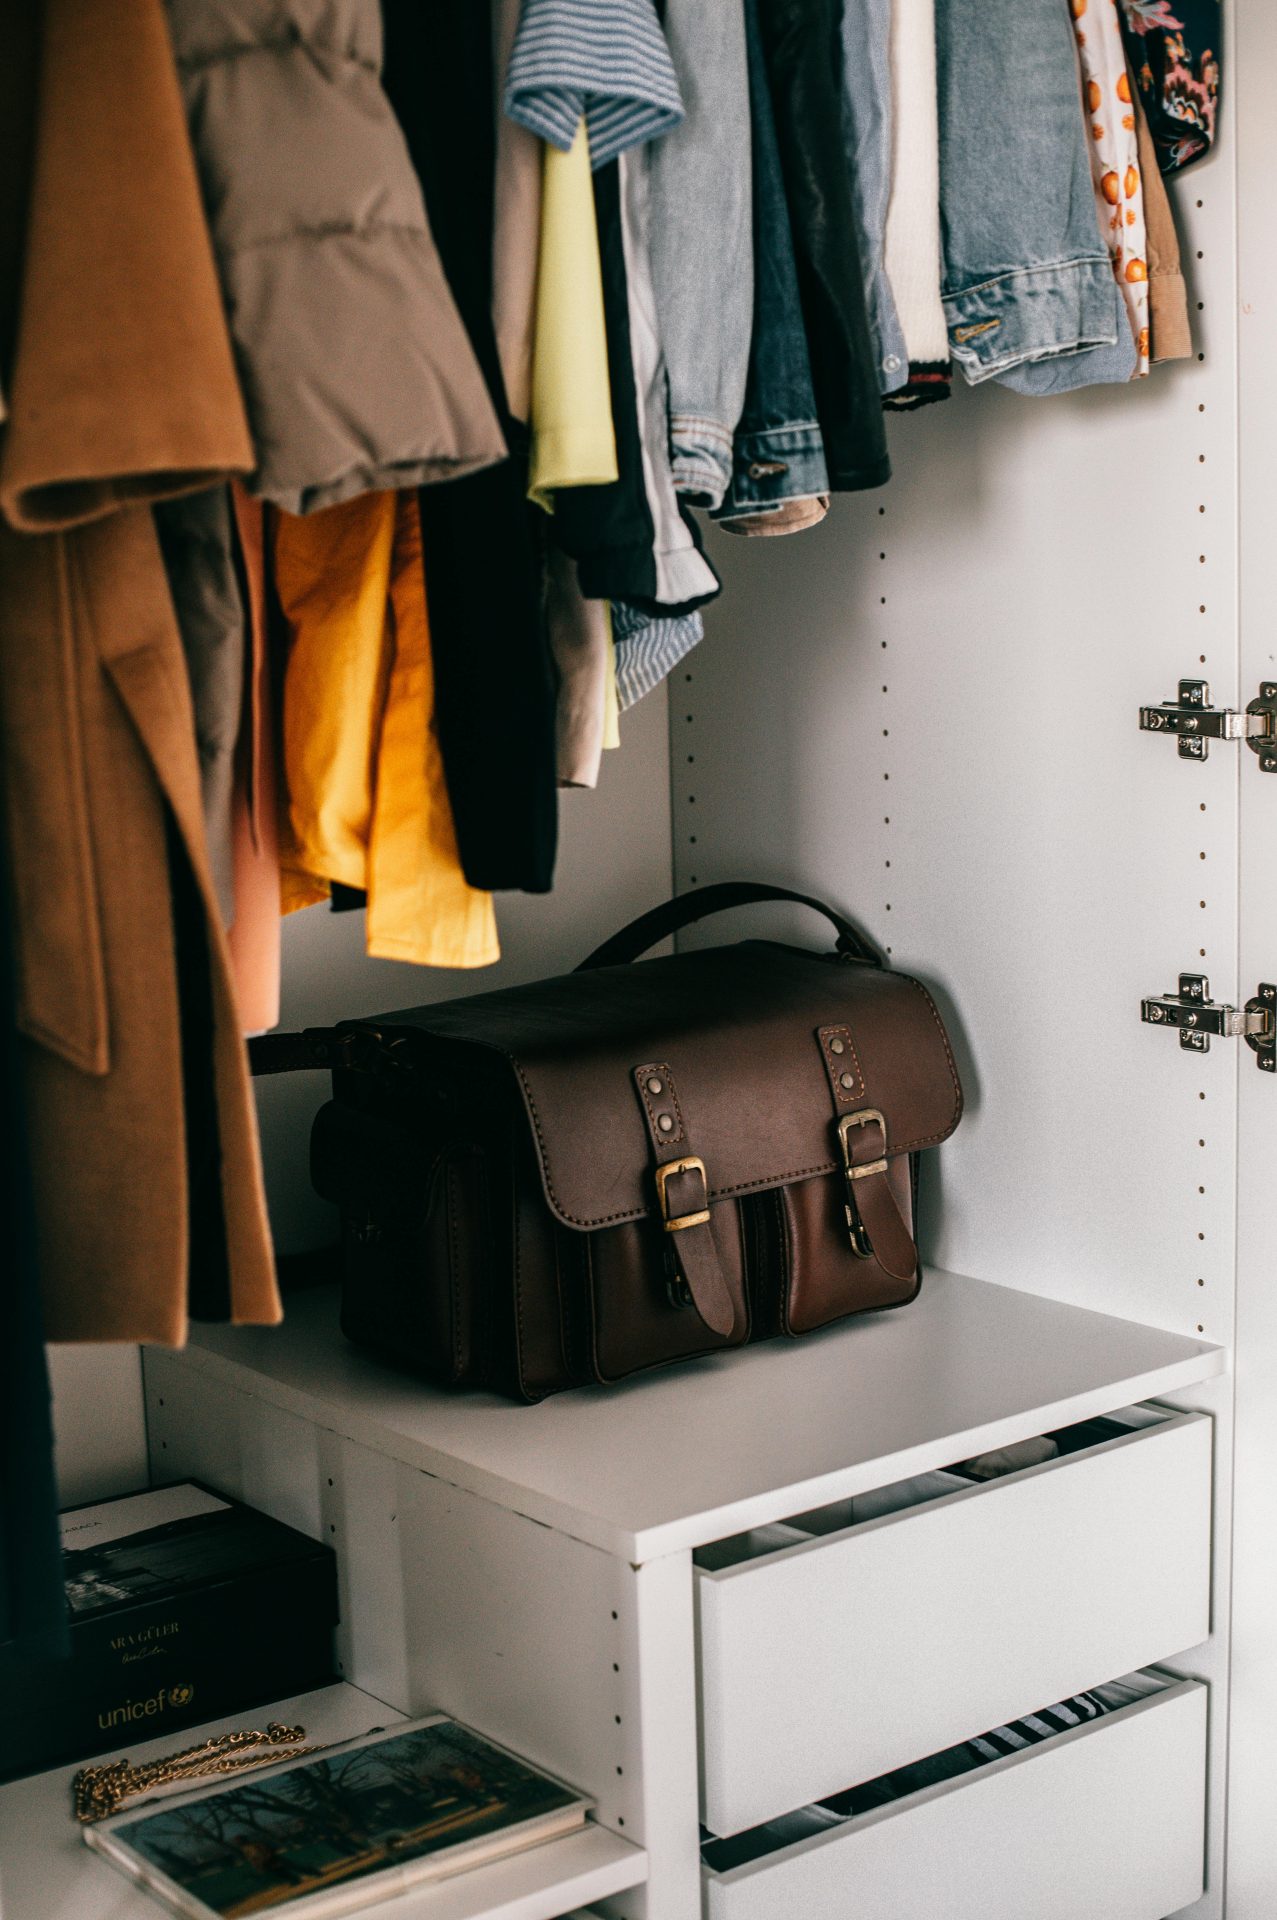 Benefits of Organized Clothing Storage